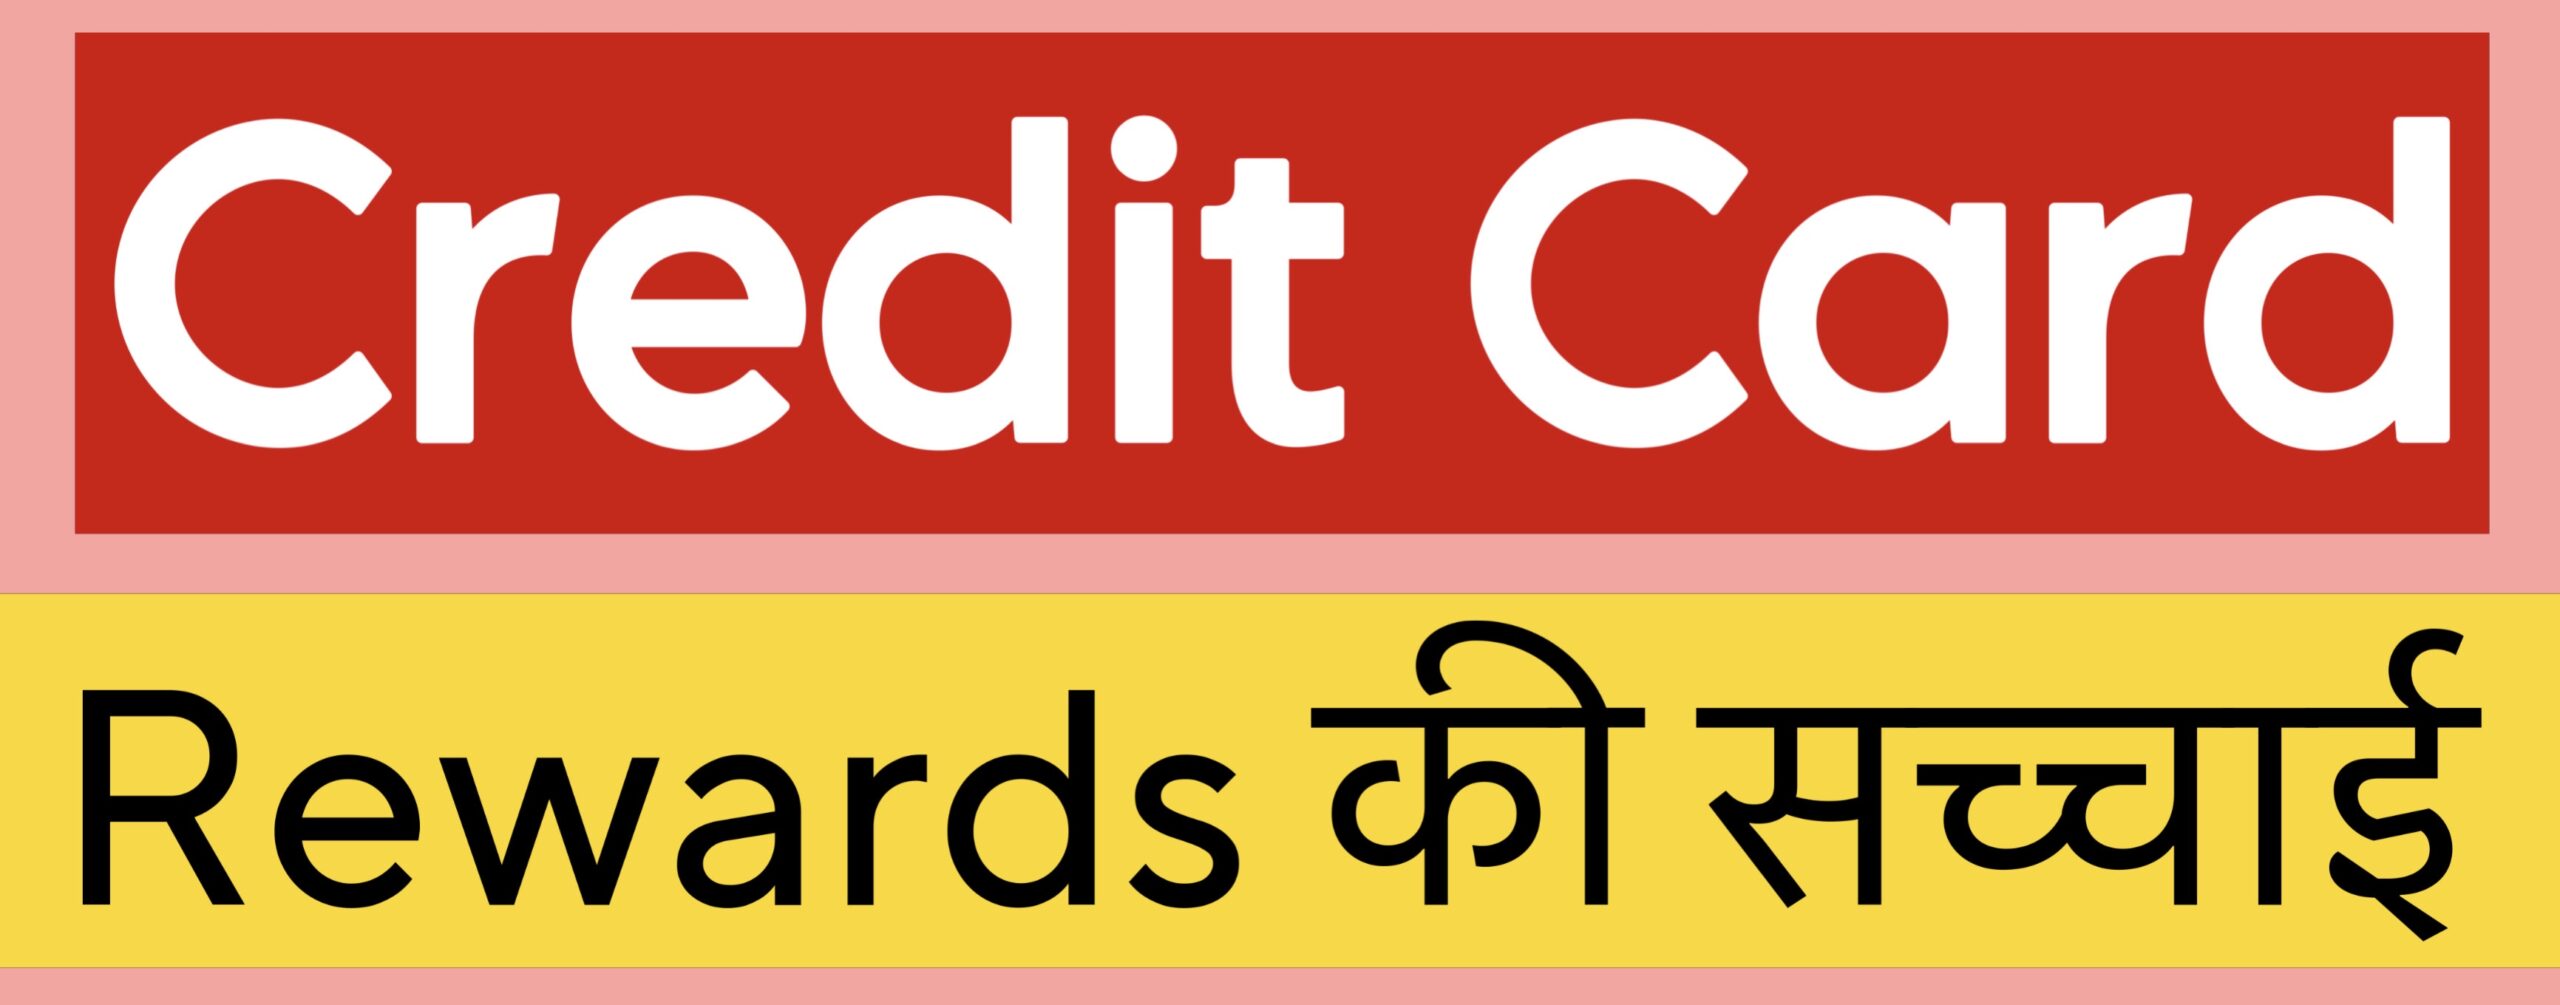 क्रेडिट कार्ड रिवार्ड्स की सच्चाई, Truth of Credit Card Rewards in Hindi